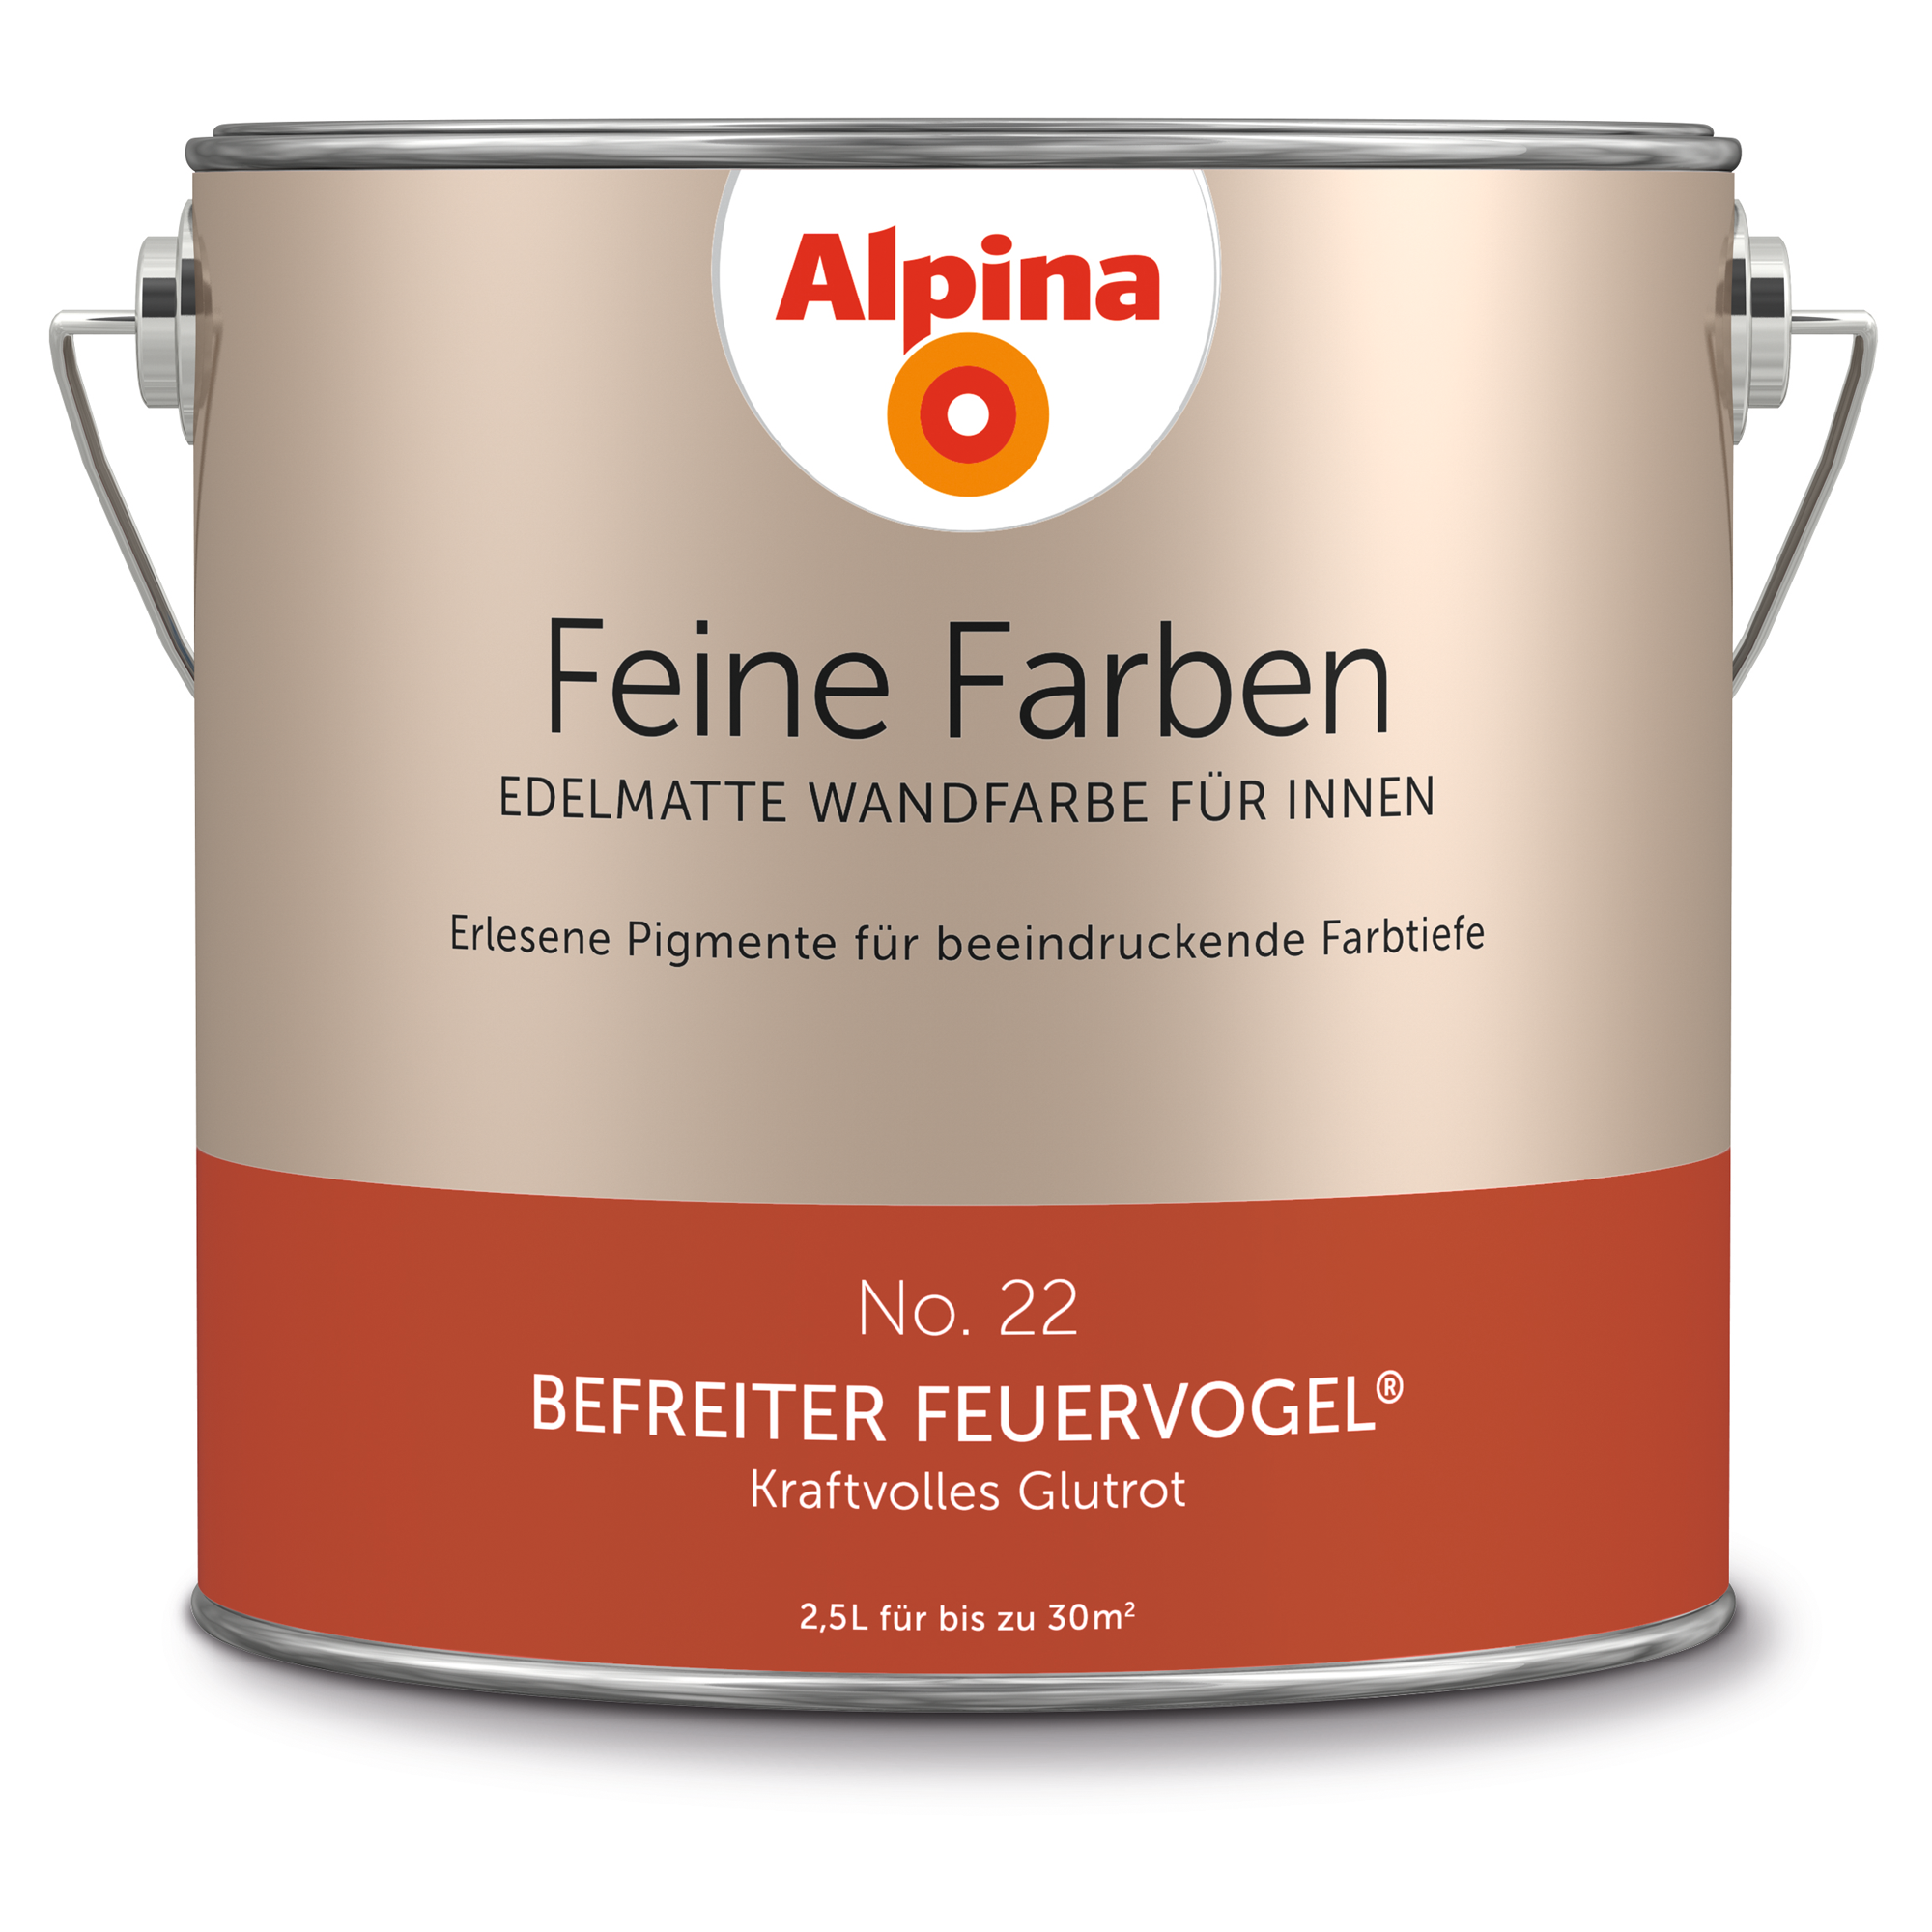 Alpina Wandfarbe 'Feine Farben' No. 22 'Befreiter Feuervogel', glutrot, 2,5 l